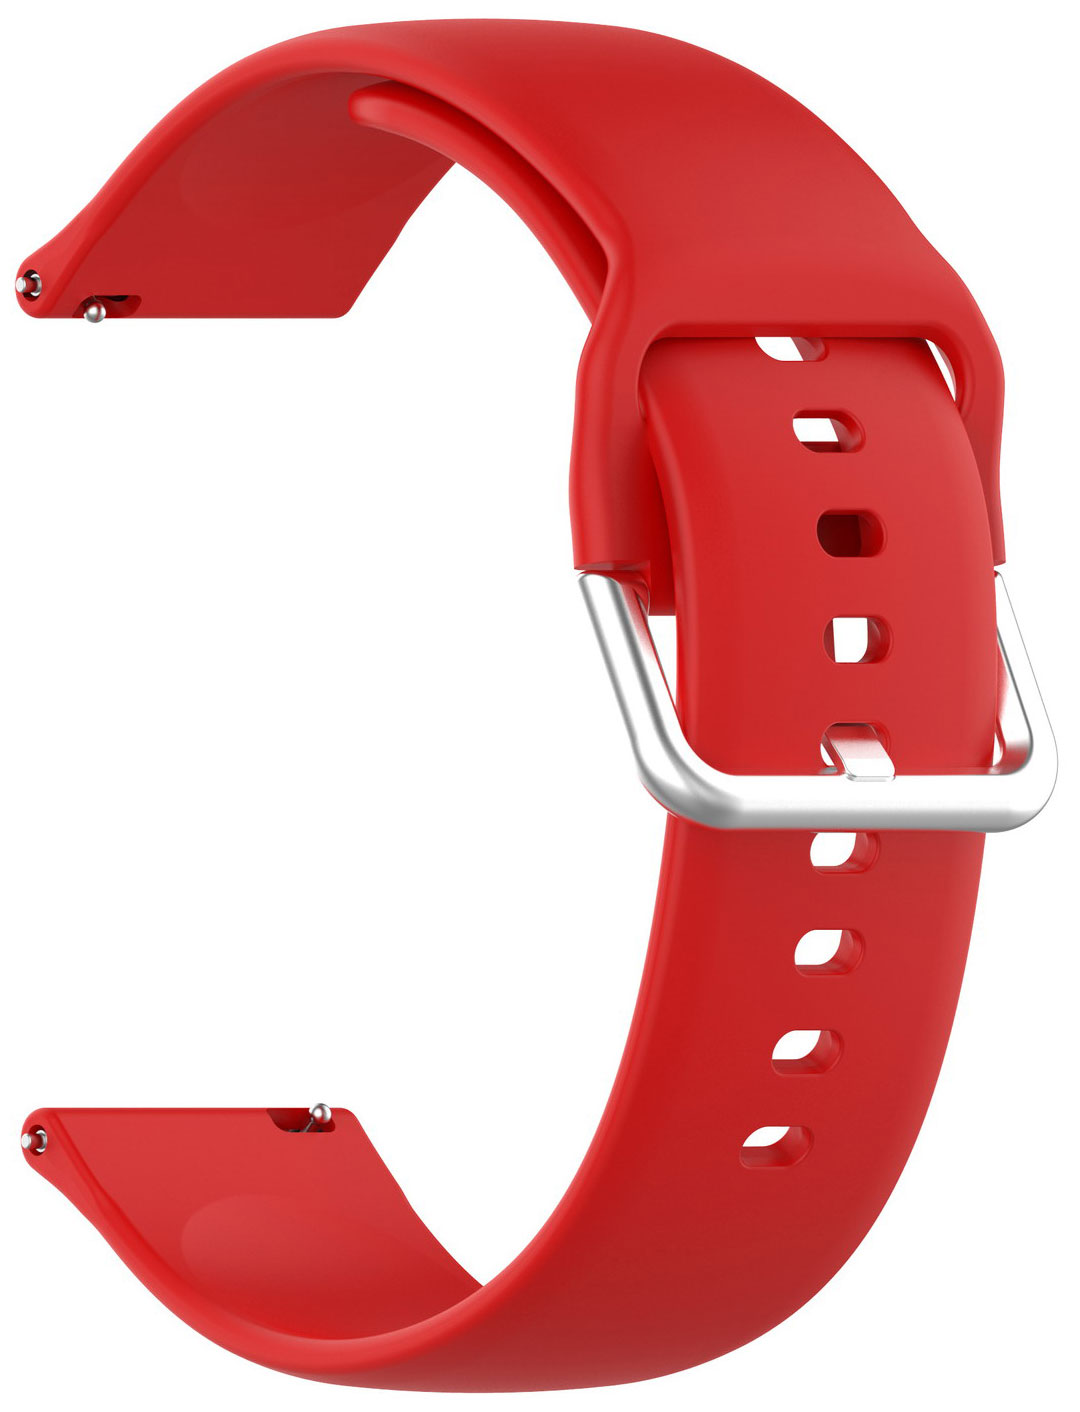 Ремешок для смарт-часов Red Line универсальный силиконовый, 22 mm, красный УТ000025252 ремешок red line для часов универсальный силиконовый 22 mm оранжевый